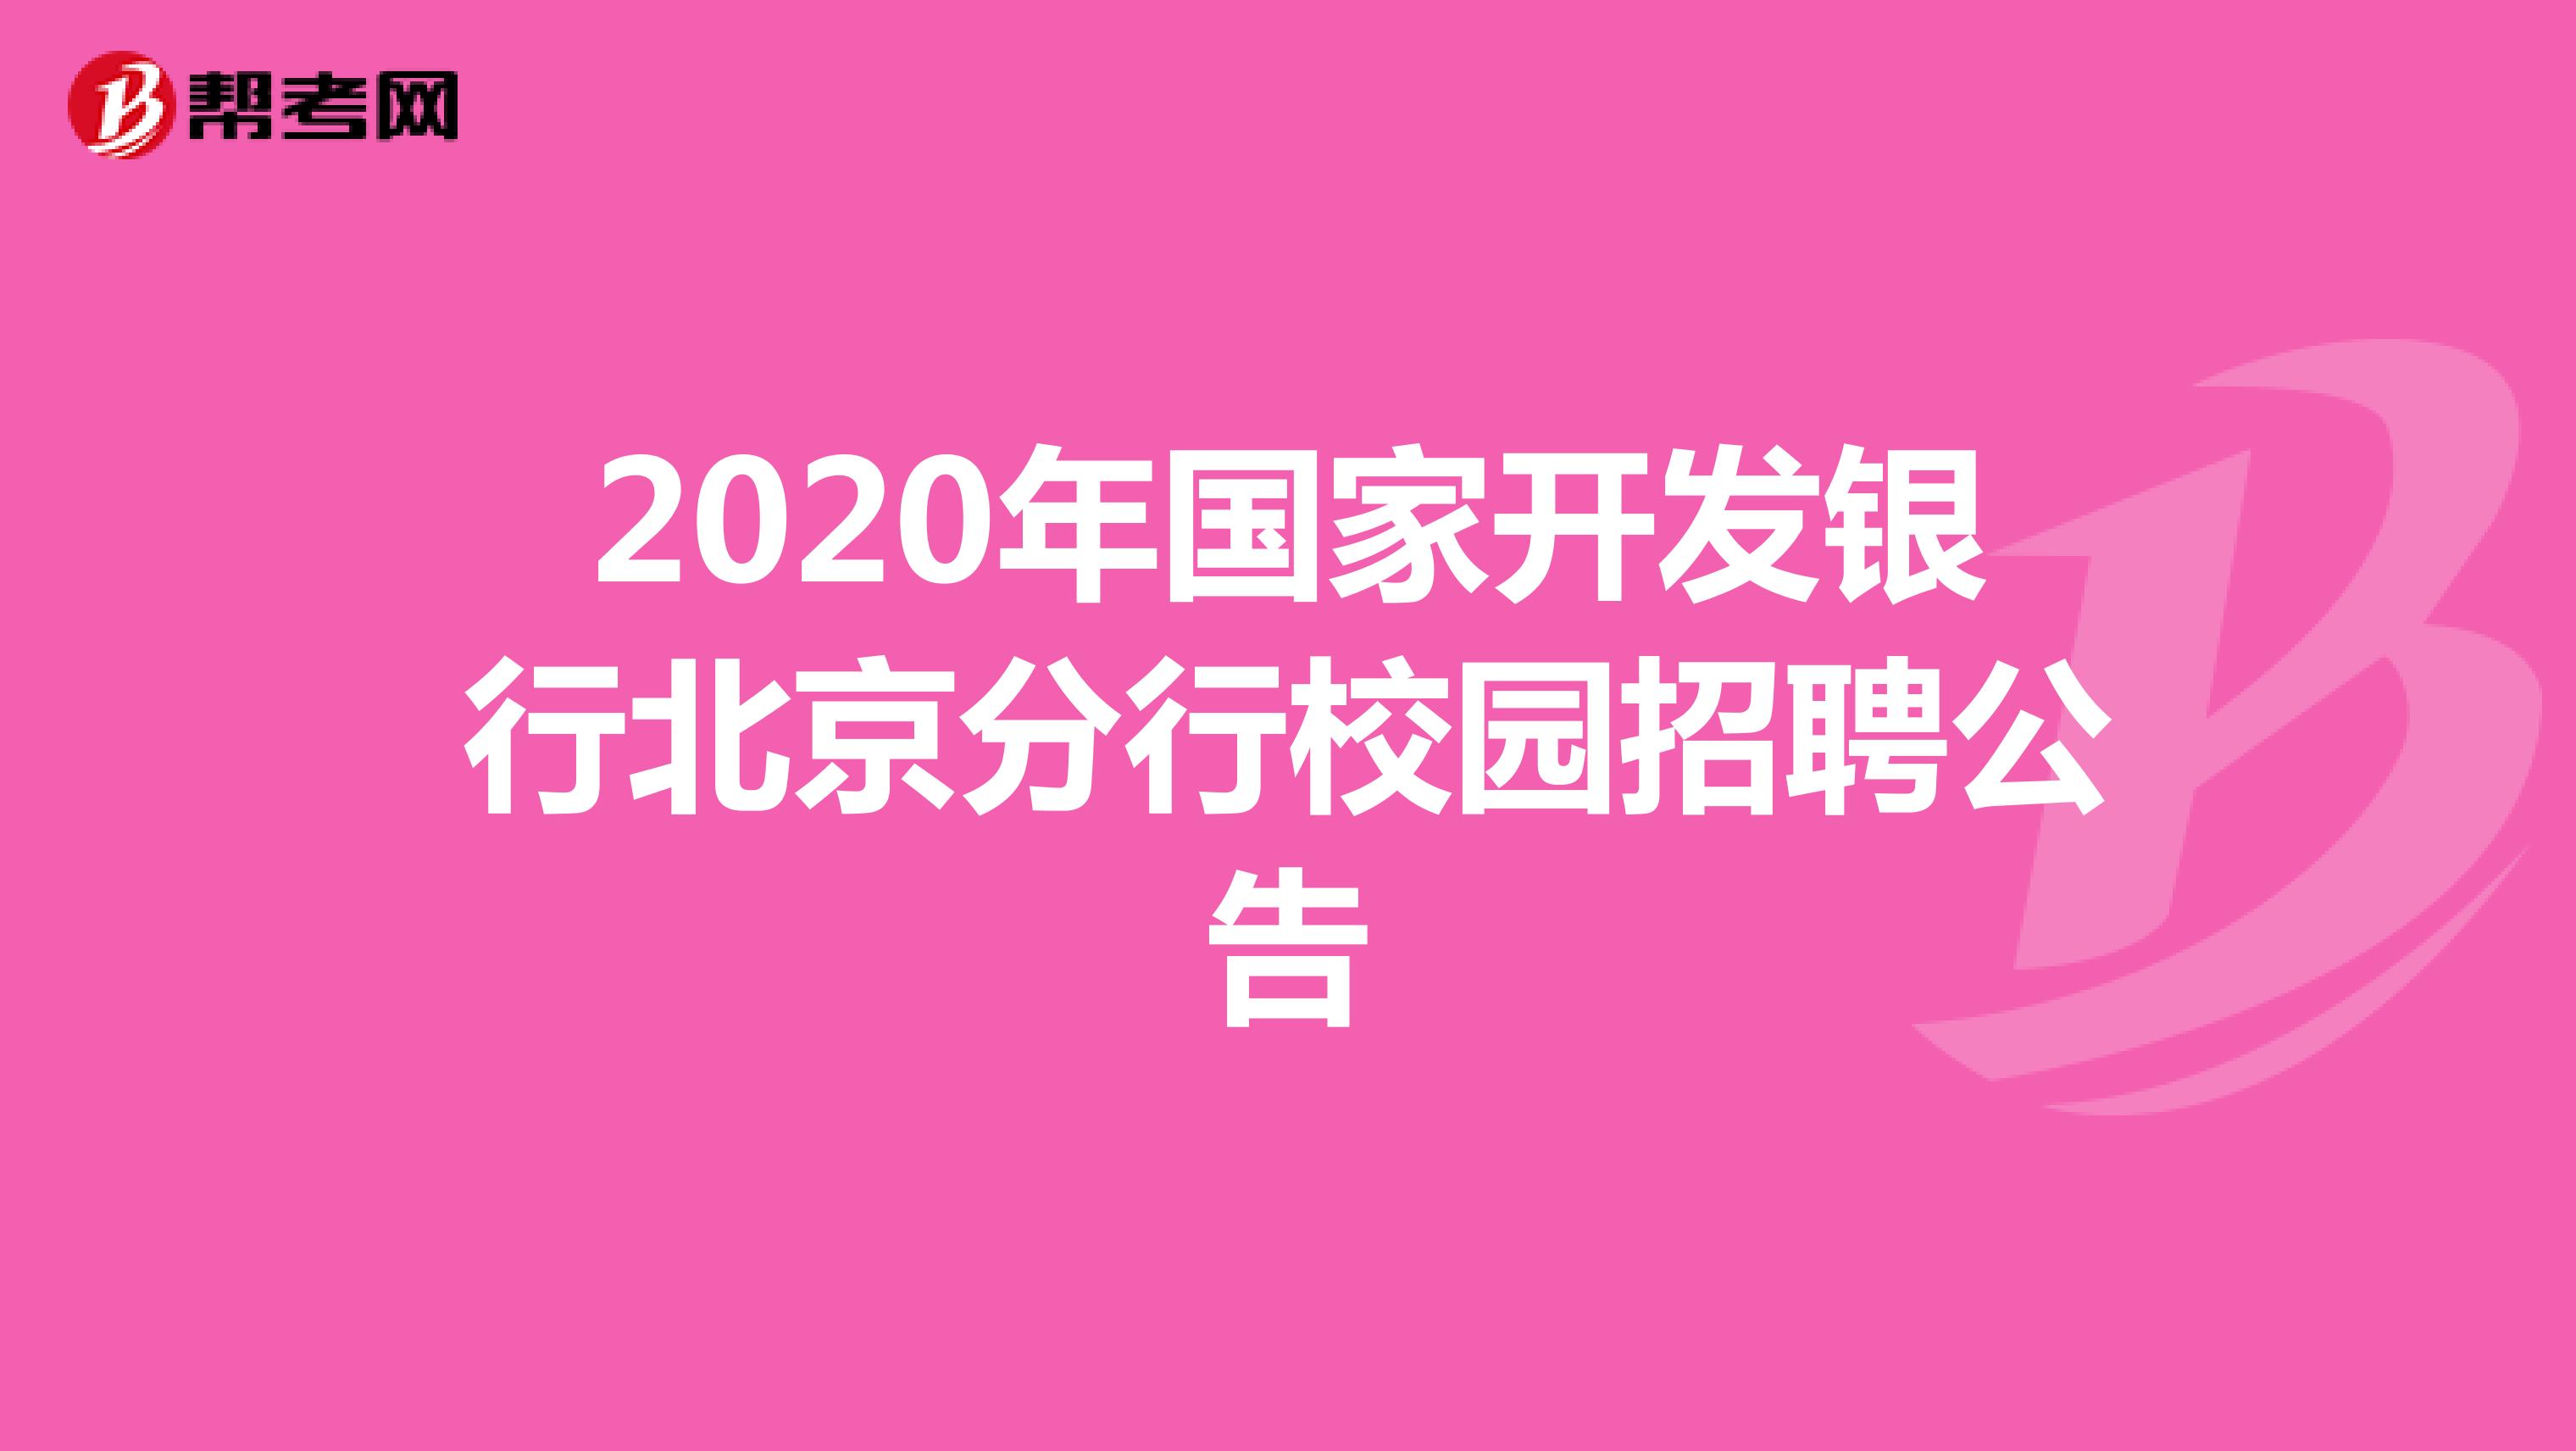 2020年国家开发银行北京分行校园招聘公告